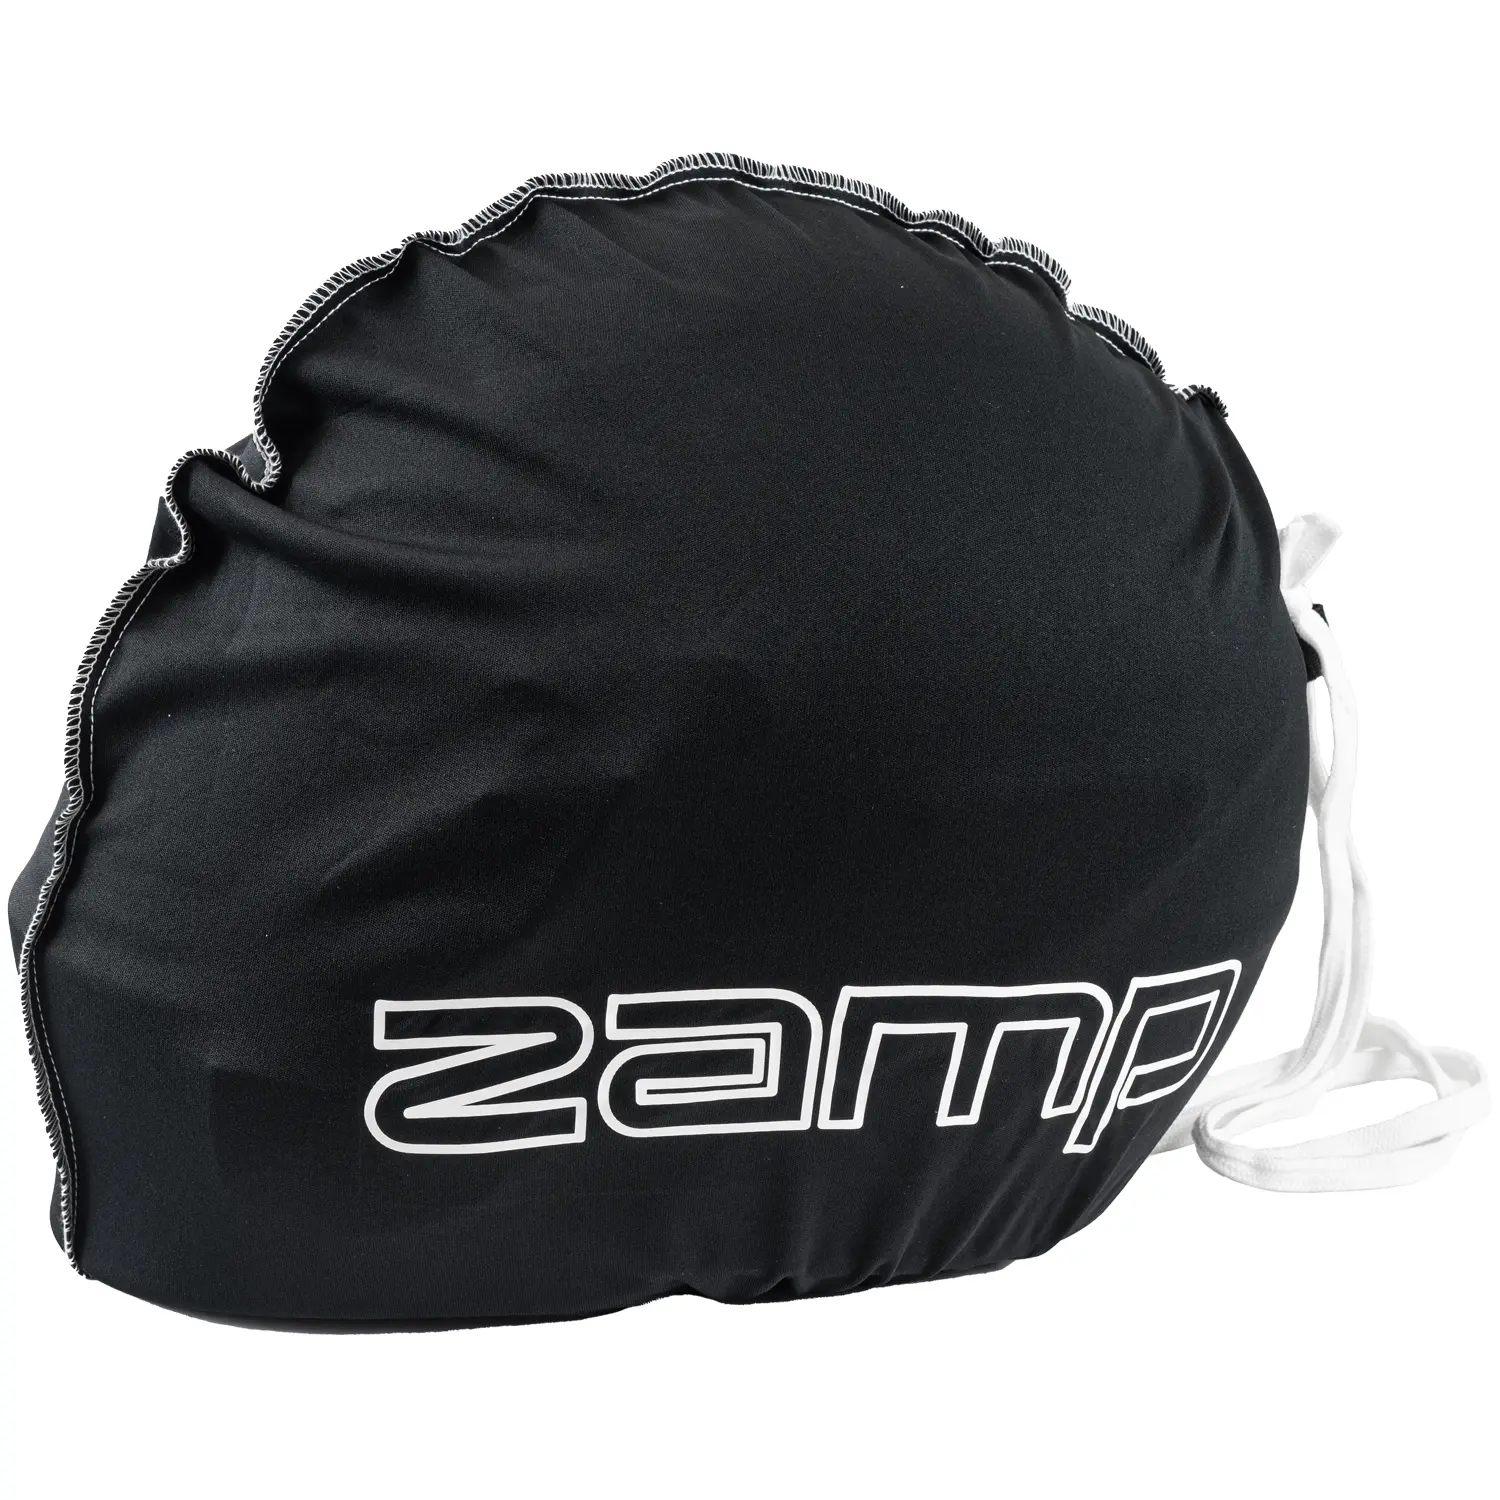 Single Helmet Bag Black